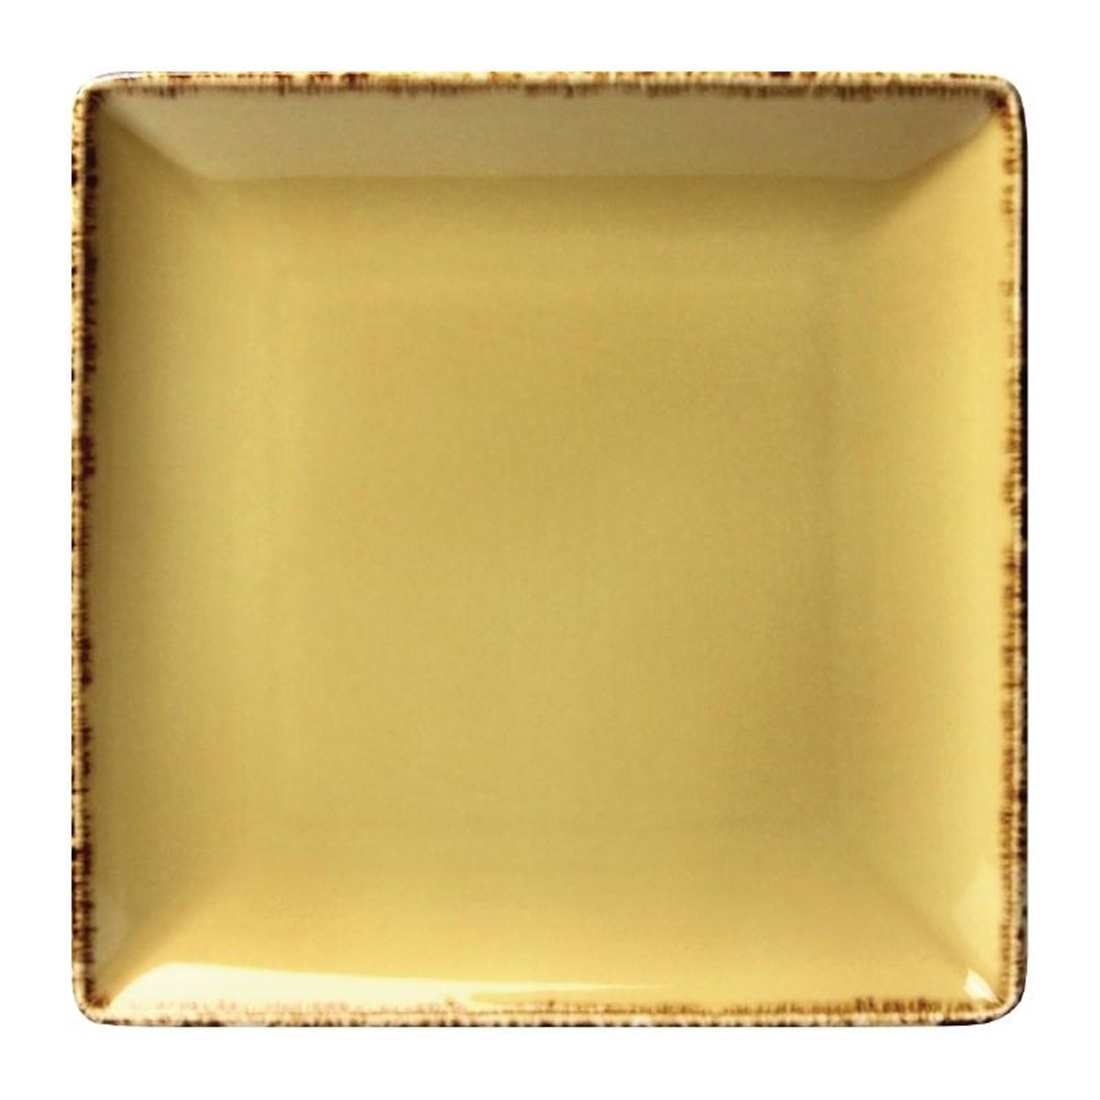 Steelite Terramesa Square Plate Wheat 190 x 190mm